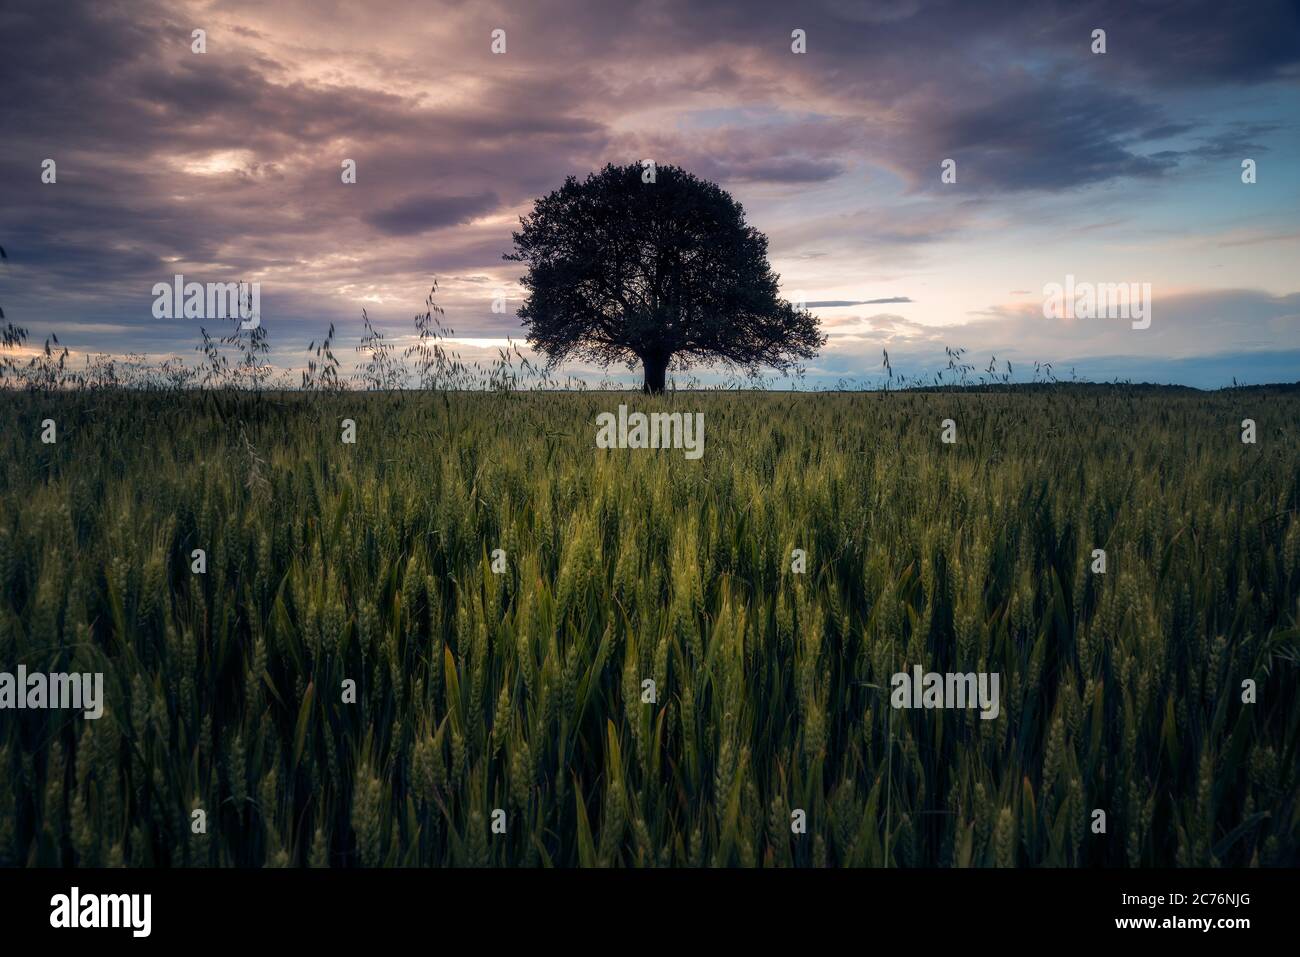 Einsamer Eichenbaum in der Mitte des Rahmens in einem Weizenfeld gegen dramatischen Himmel nach einem Sturm zentriert Stockfoto